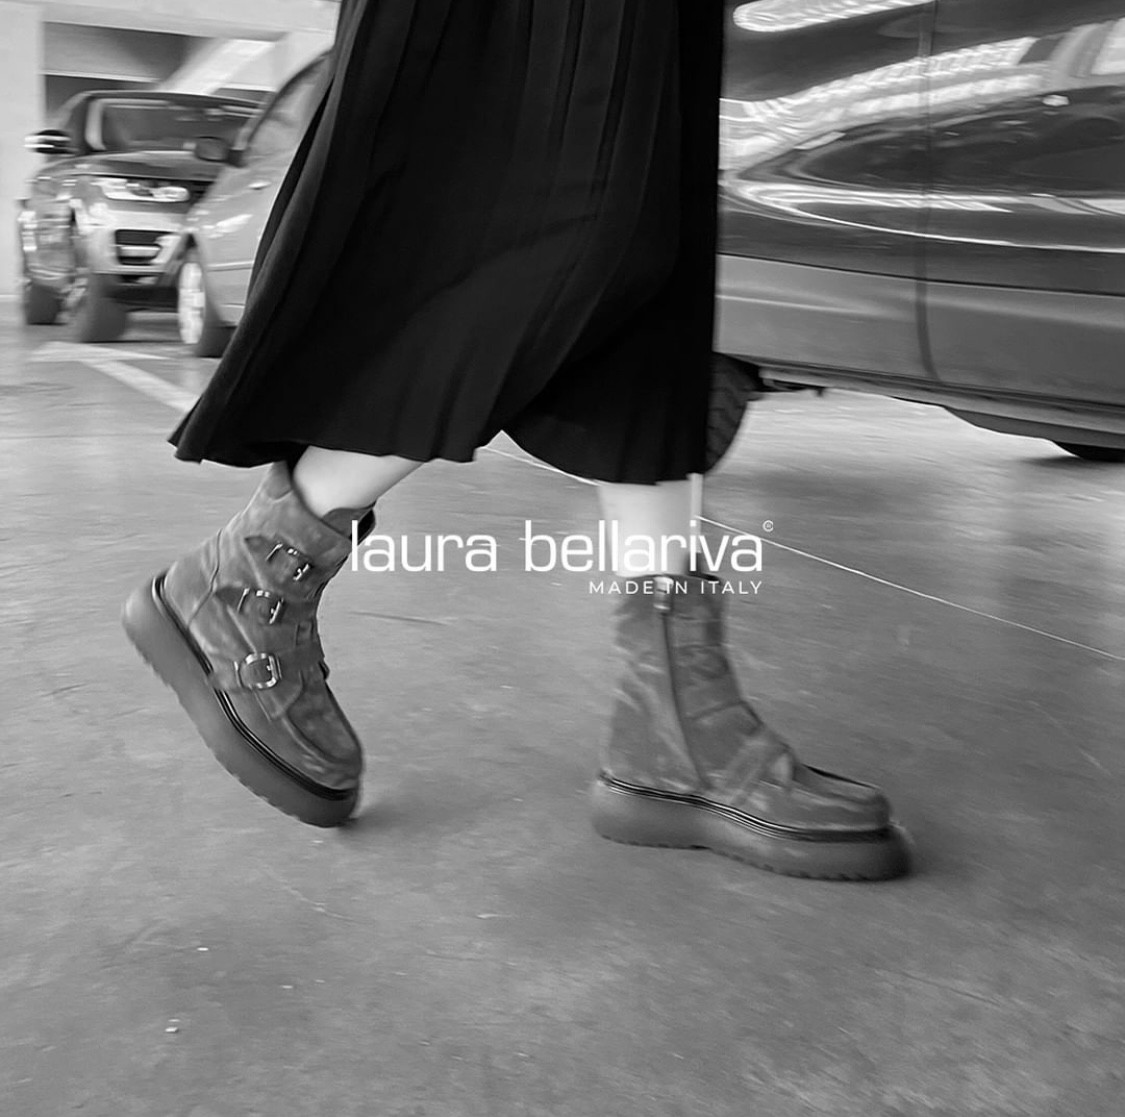 geloof Discreet Ster Laura Bellariva damesschoenen online kopen | RIGI Roeselare